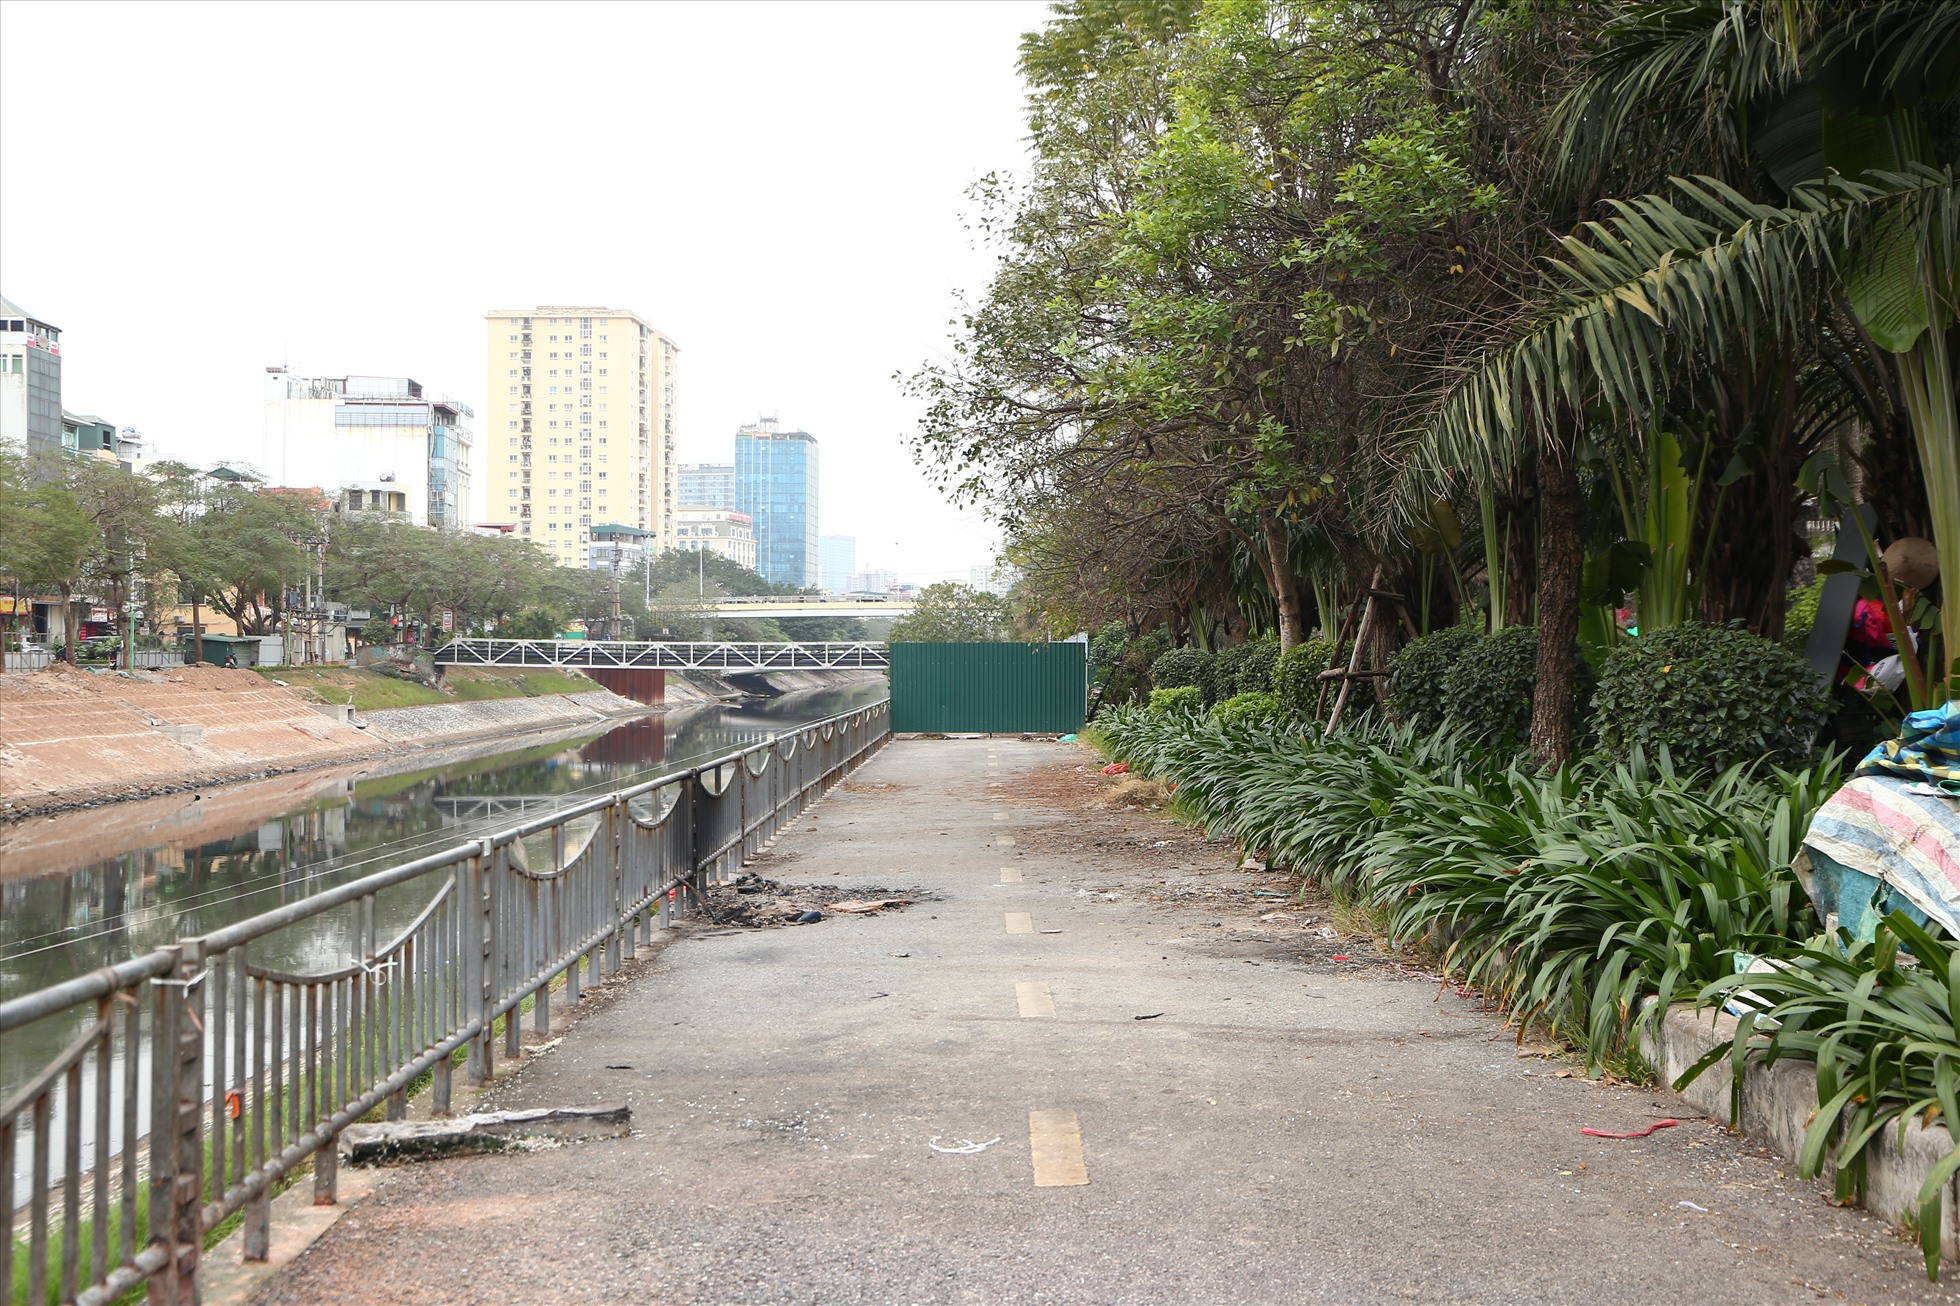 Tuyến đường đi bộ ven sông Tô Lịch được Sở Giao thông Vận tải Hà Nội đầu tư xây dựng vào đầu năm 2019, với tổng mức đầu tư lên tới 64 tỉ đồng. Ảnh: Vĩnh Hoàng